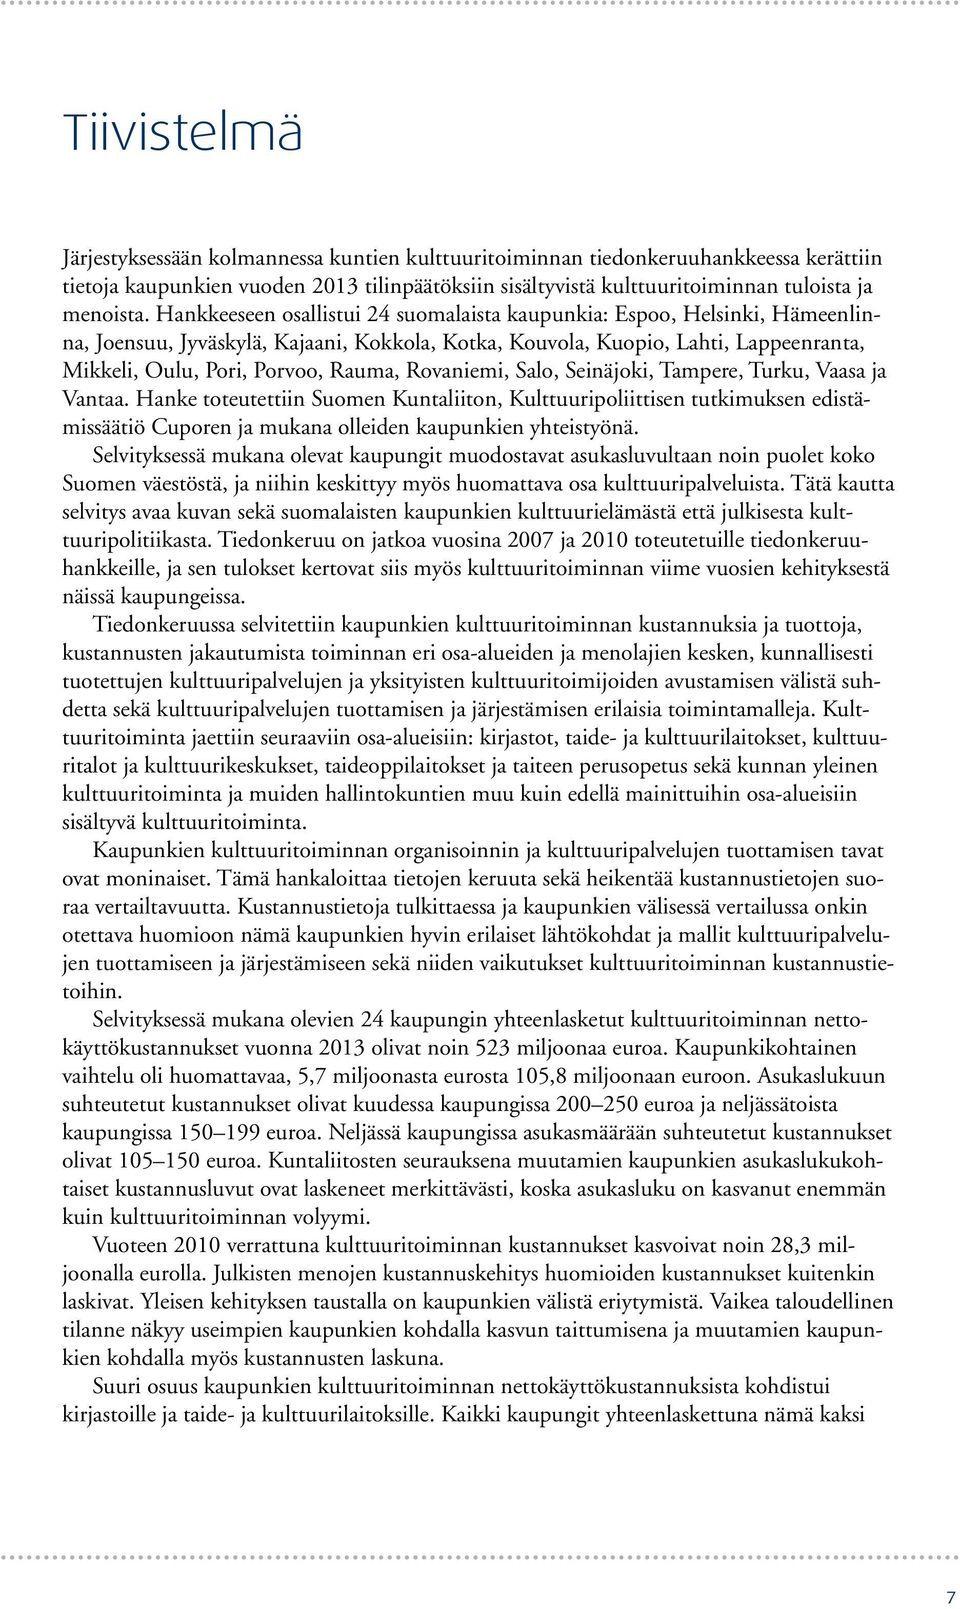 Rovaniemi, Salo, Seinäjoki, Tampere, Turku, Vaasa ja Vantaa. Hanke toteutettiin Suomen Kuntaliiton, Kulttuuripoliittisen tutkimuksen edistämissäätiö Cuporen ja mukana olleiden kaupunkien yhteistyönä.